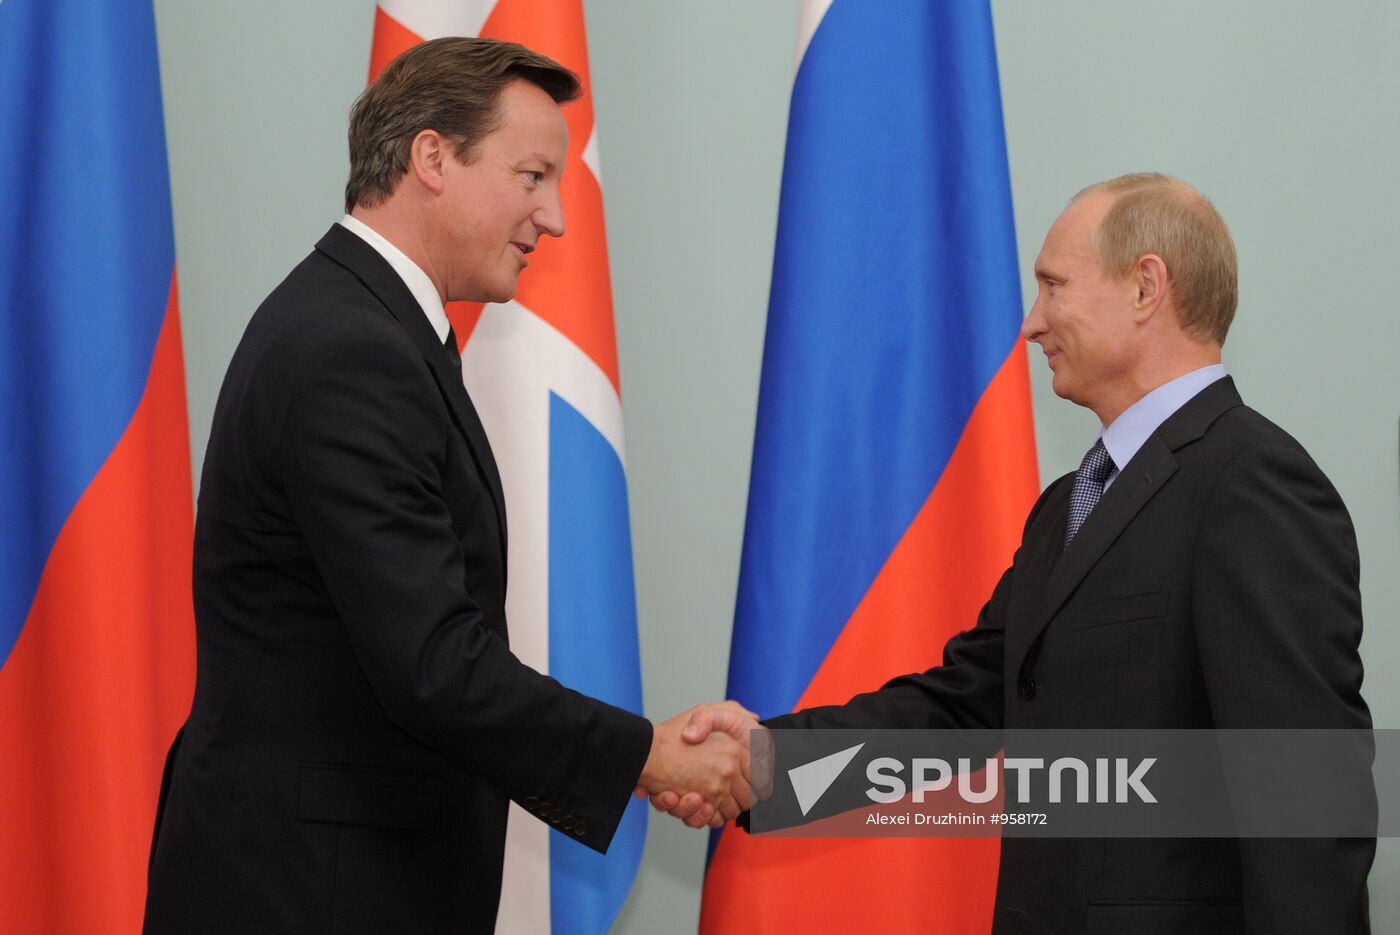 Vladimir Putin meets with David Cameron